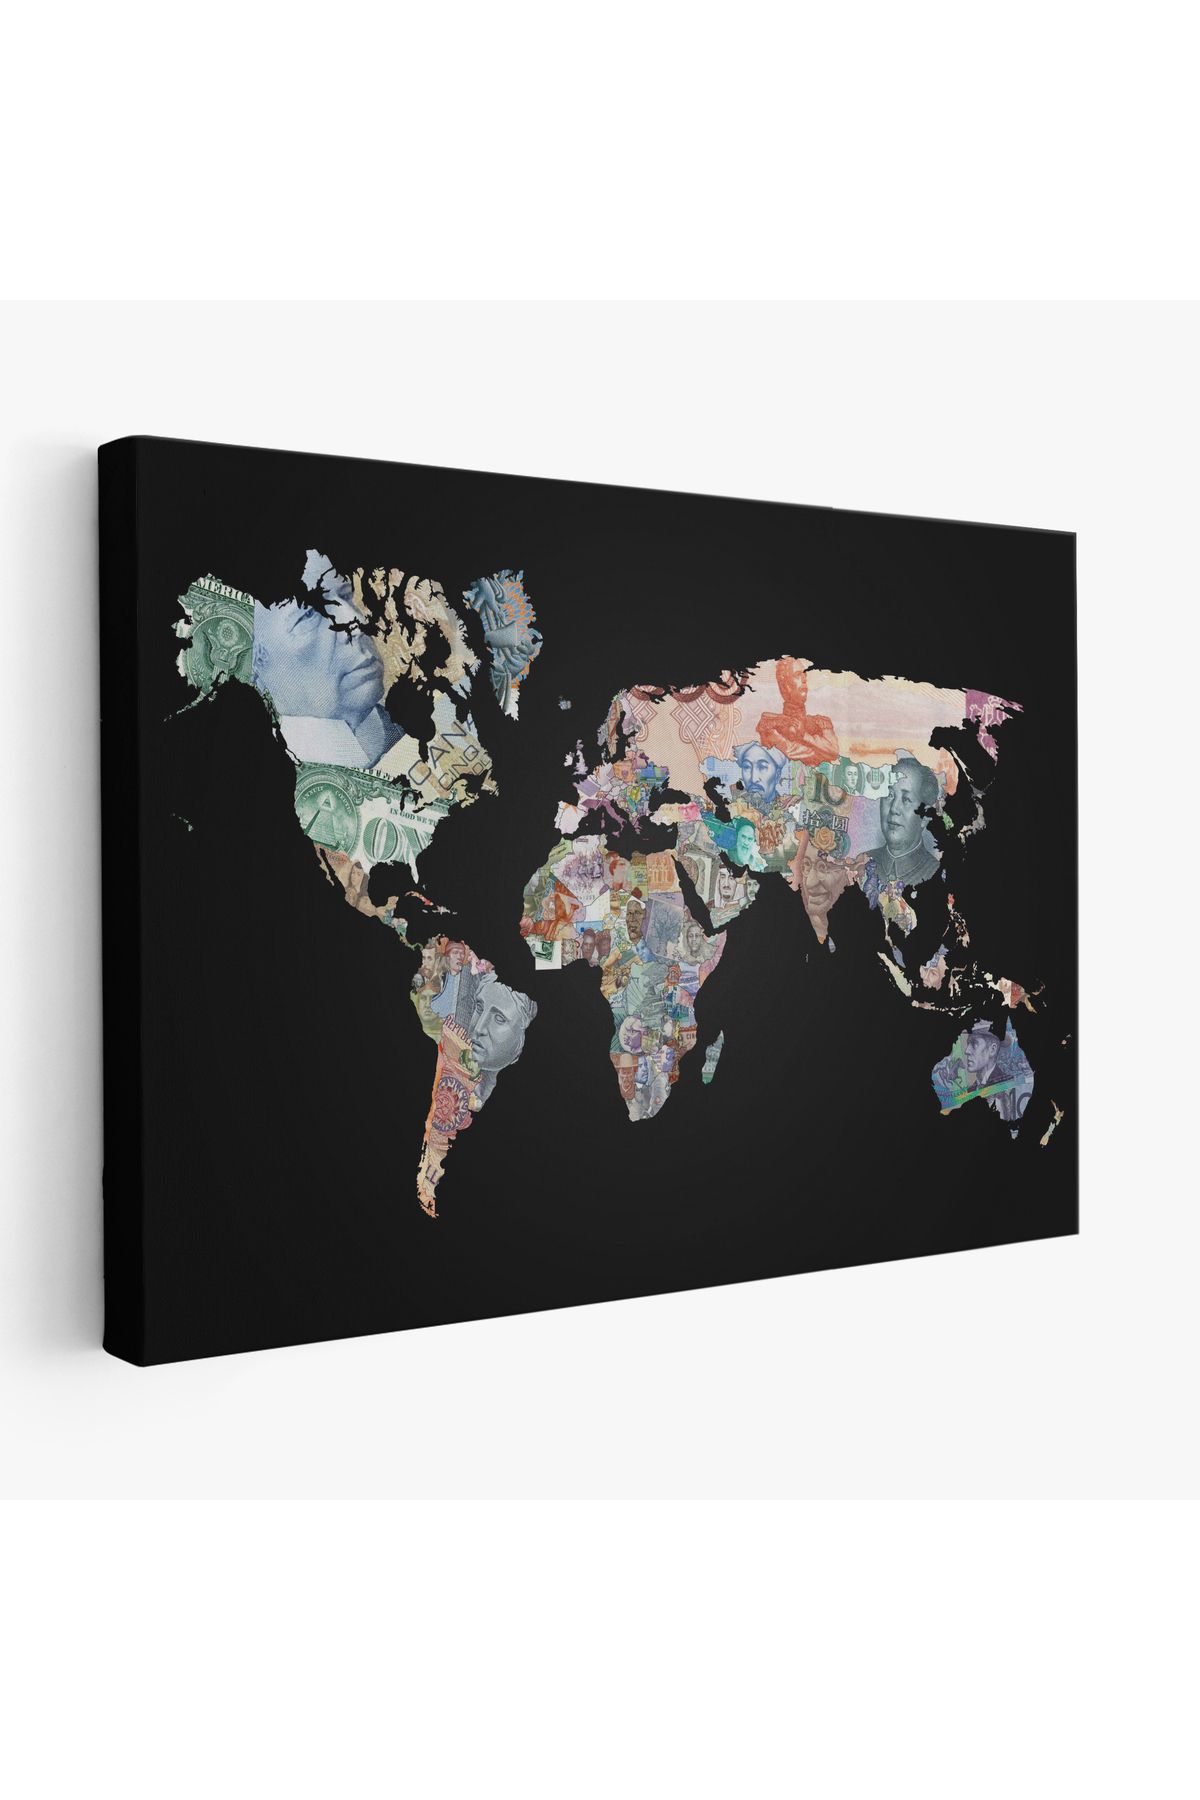 Ervastore Erv Seri100 Para Desenli Kanvas Dünya haritası Kanvas Tablo 1012